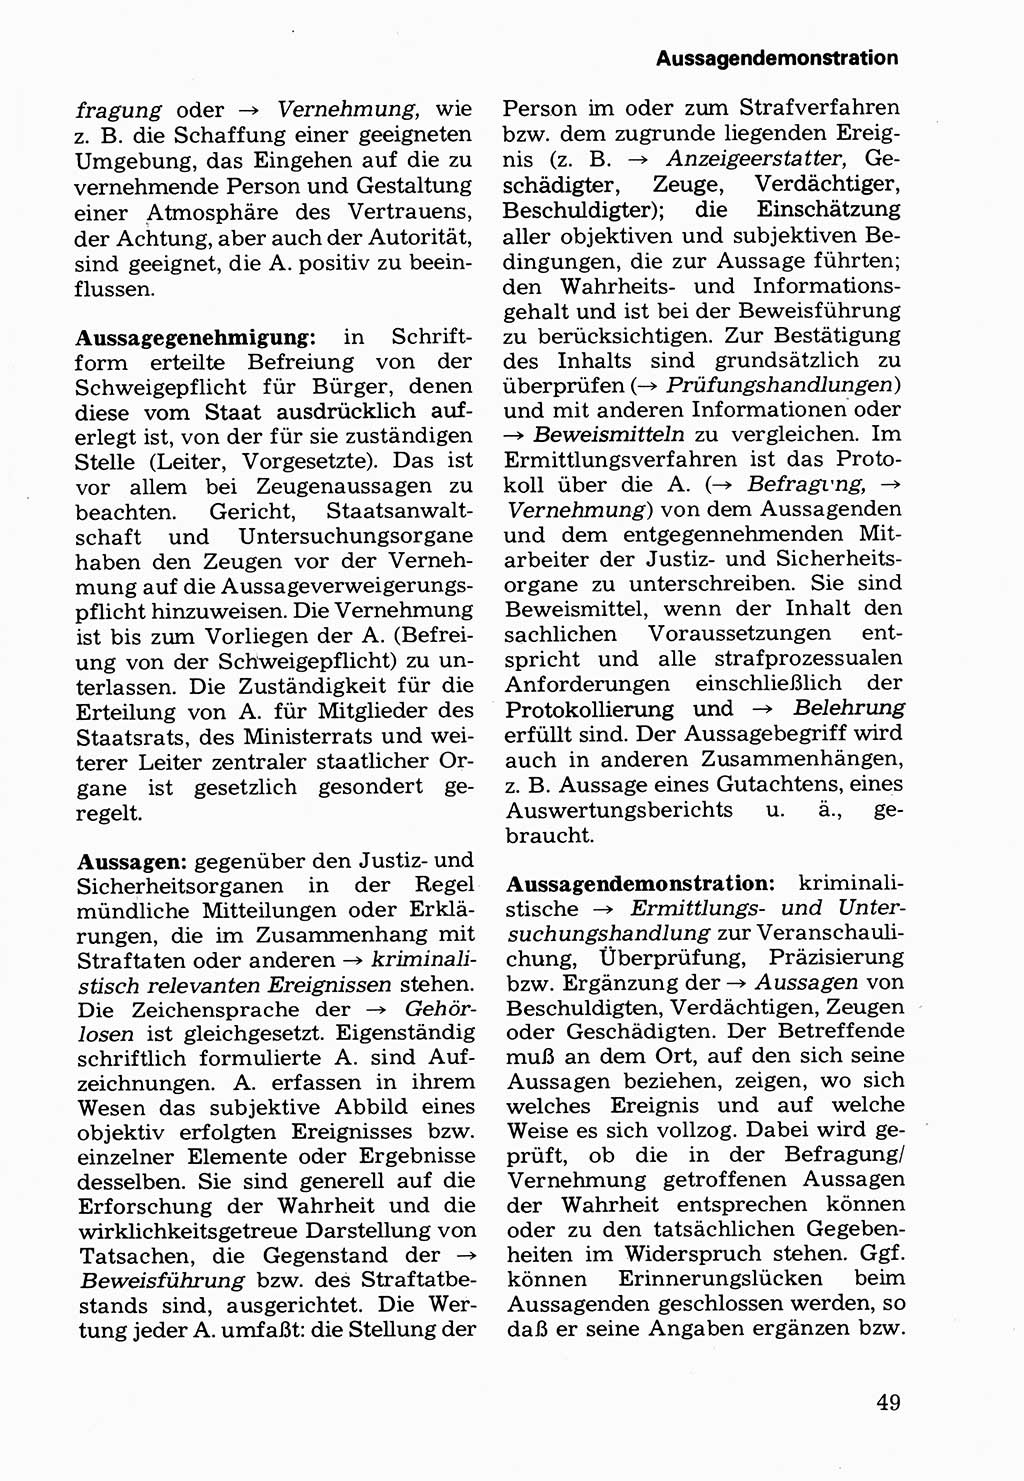 Wörterbuch der sozialistischen Kriminalistik [Deutsche Demokratische Republik (DDR)] 1981, Seite 49 (Wb. soz. Krim. DDR 1981, S. 49)